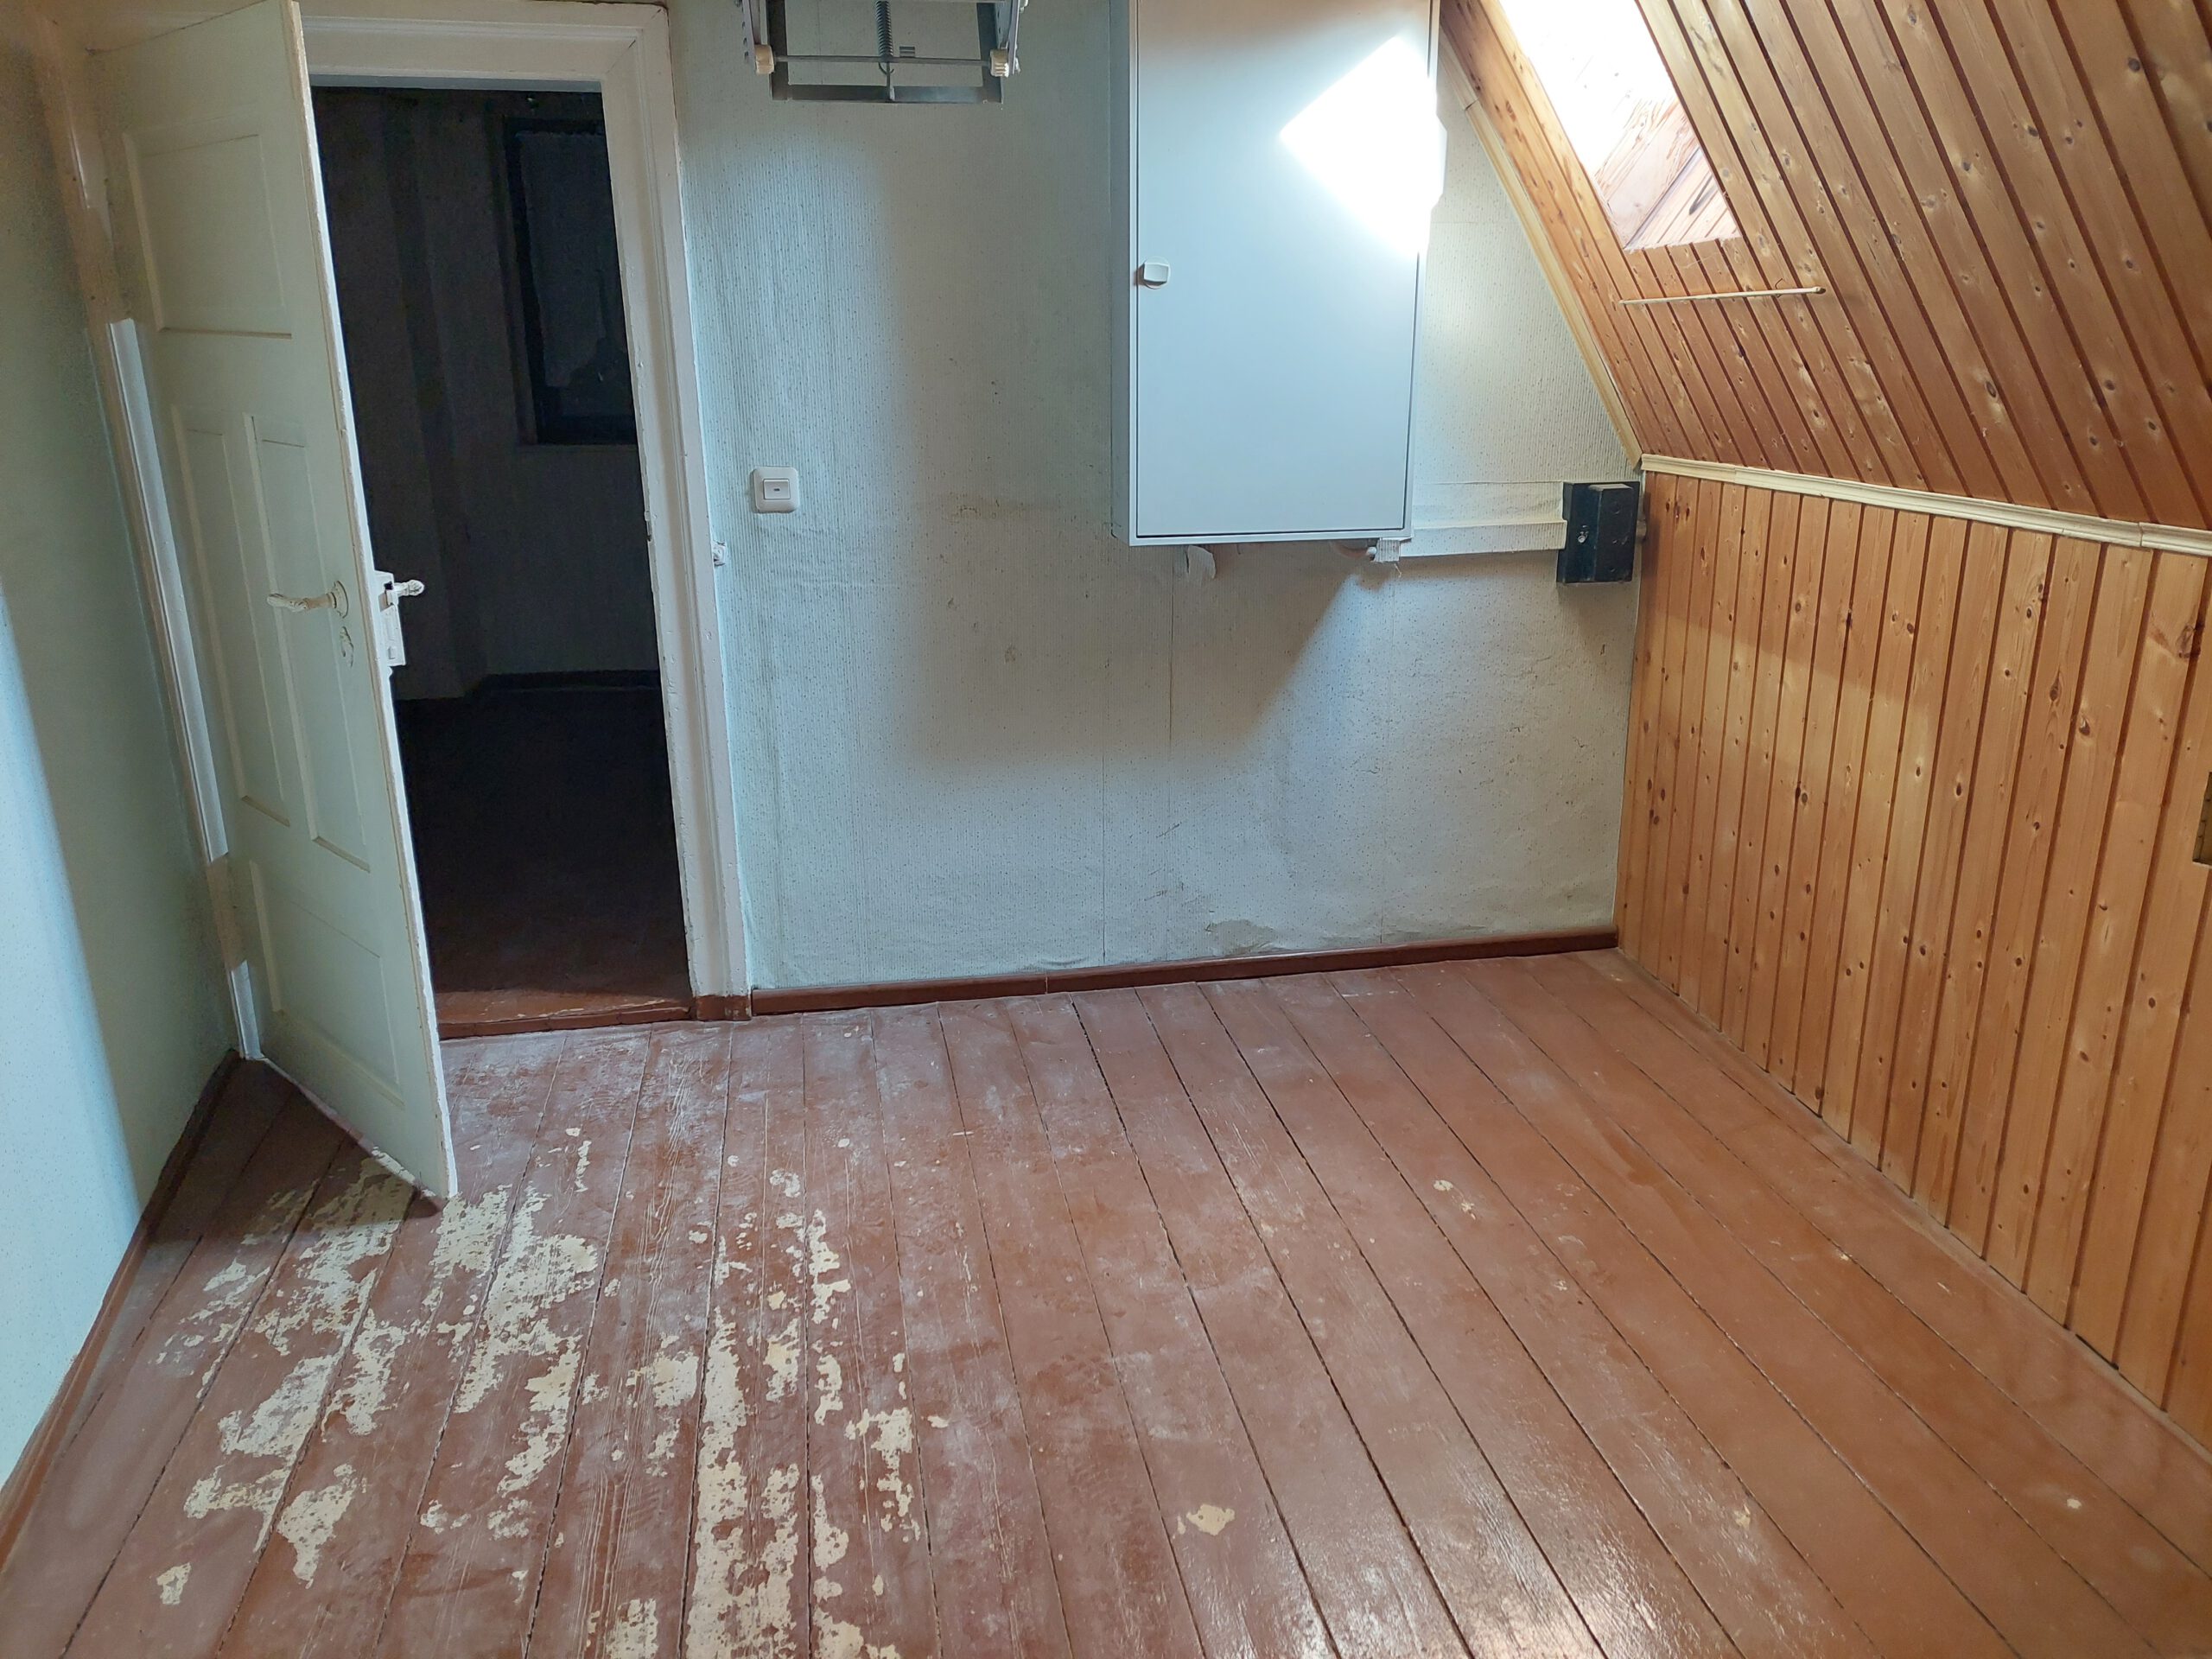 Einfamilienhaus in Merkewitz - Zimmer im Dachgeschoss mit Holzdielenboden